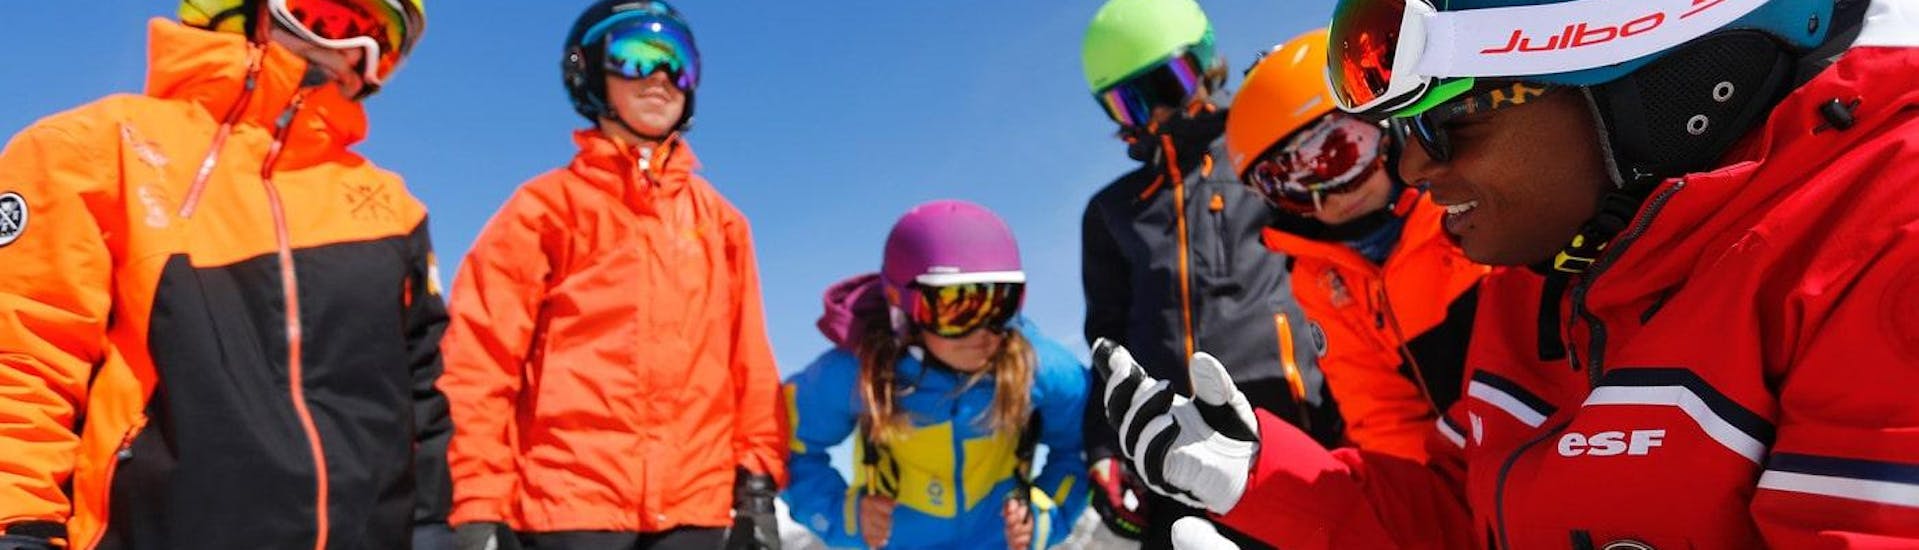 Die Teenager versammeln sich vor dem Skikurs für Teenager "Team Rider" (13-17 Jahre) um ihren Skilehrer von der Skischule ESF Alpe d'Huez - Alle Levels.